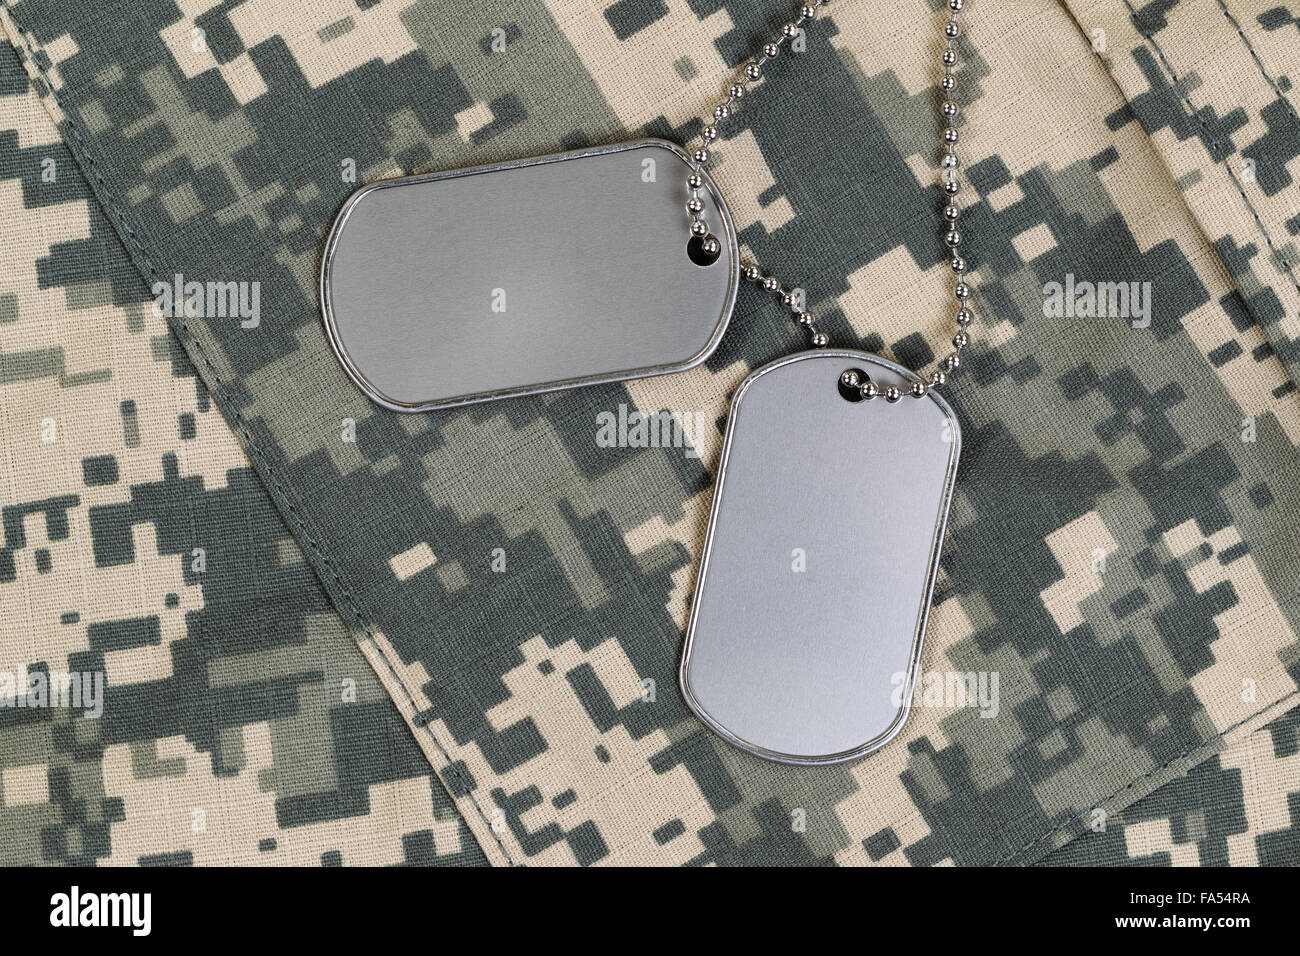 Militare tag di identificazione, catena da collo e combat uniform top. Servizio militare concetto. Foto Stock